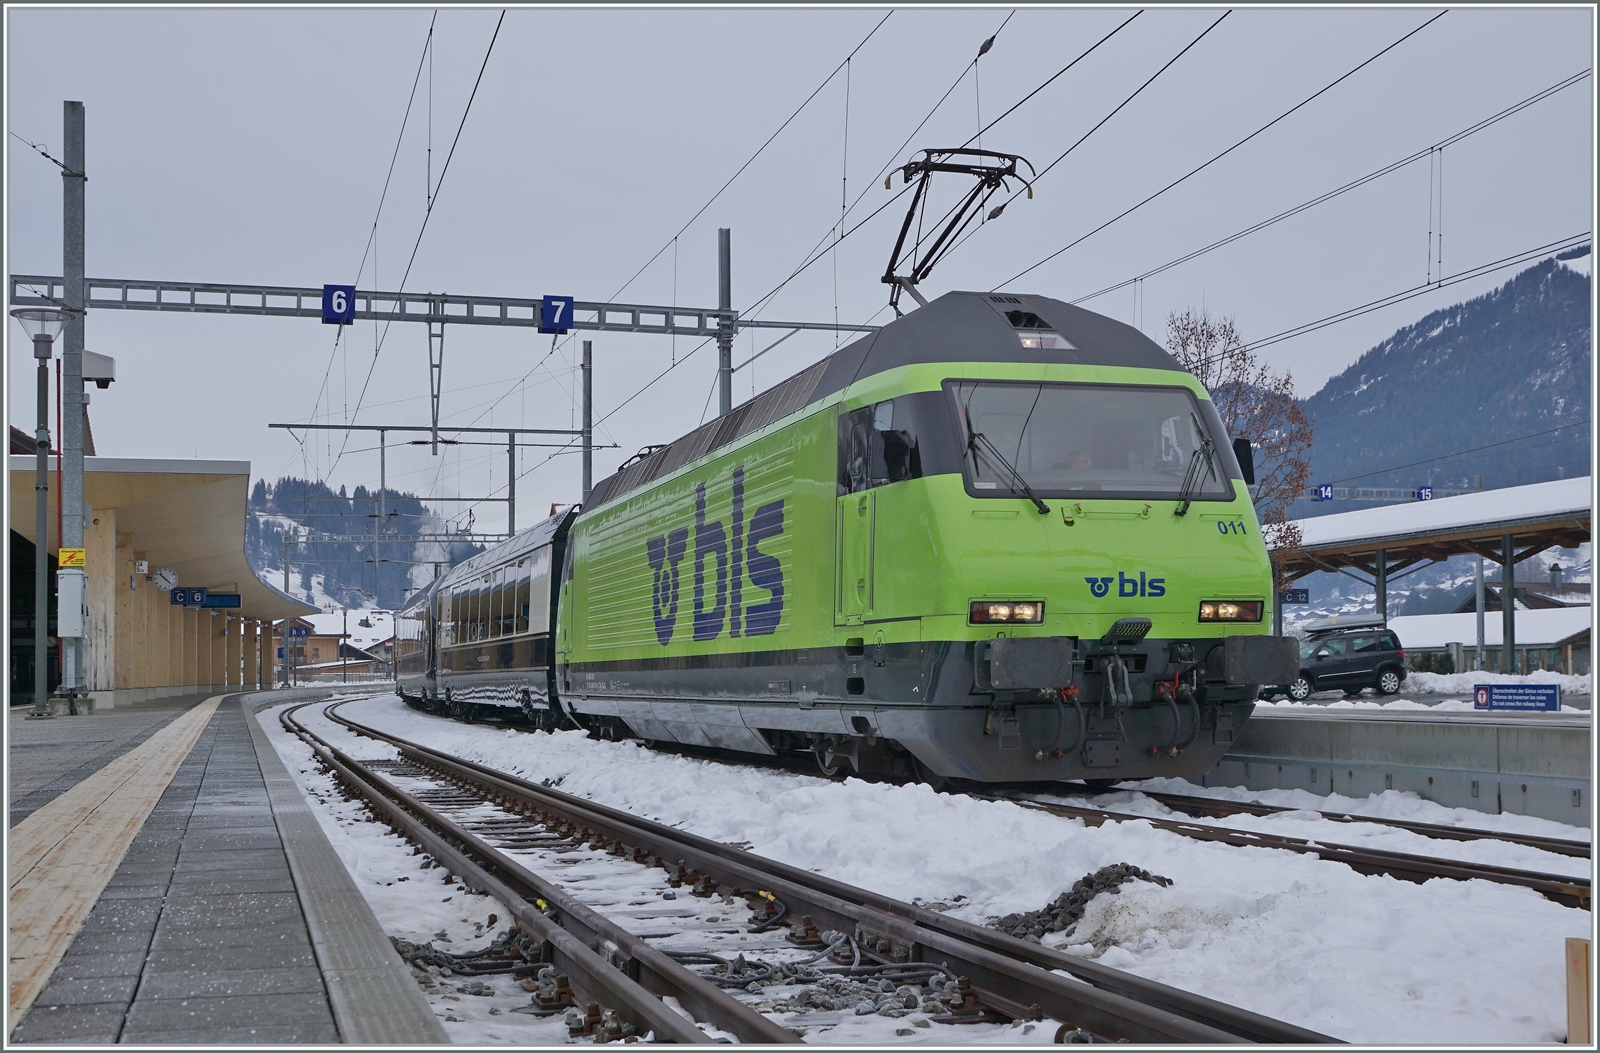 Die BLS Re 465 011 hat mit ihrem GoldenPass Express GPX 4065 von Interlaken Ost nach Montreux den Spurwechselbahnhof Zweisimmen erreicht und wird nun die Traktion des GPX der schmalspurigen Ge 4/4 8002 überlassen. 
Somit sind erfreulicherweise wieder BLS Streckenloks im Reisezugverkehr anzutreffen. 

15. Dezember 2022